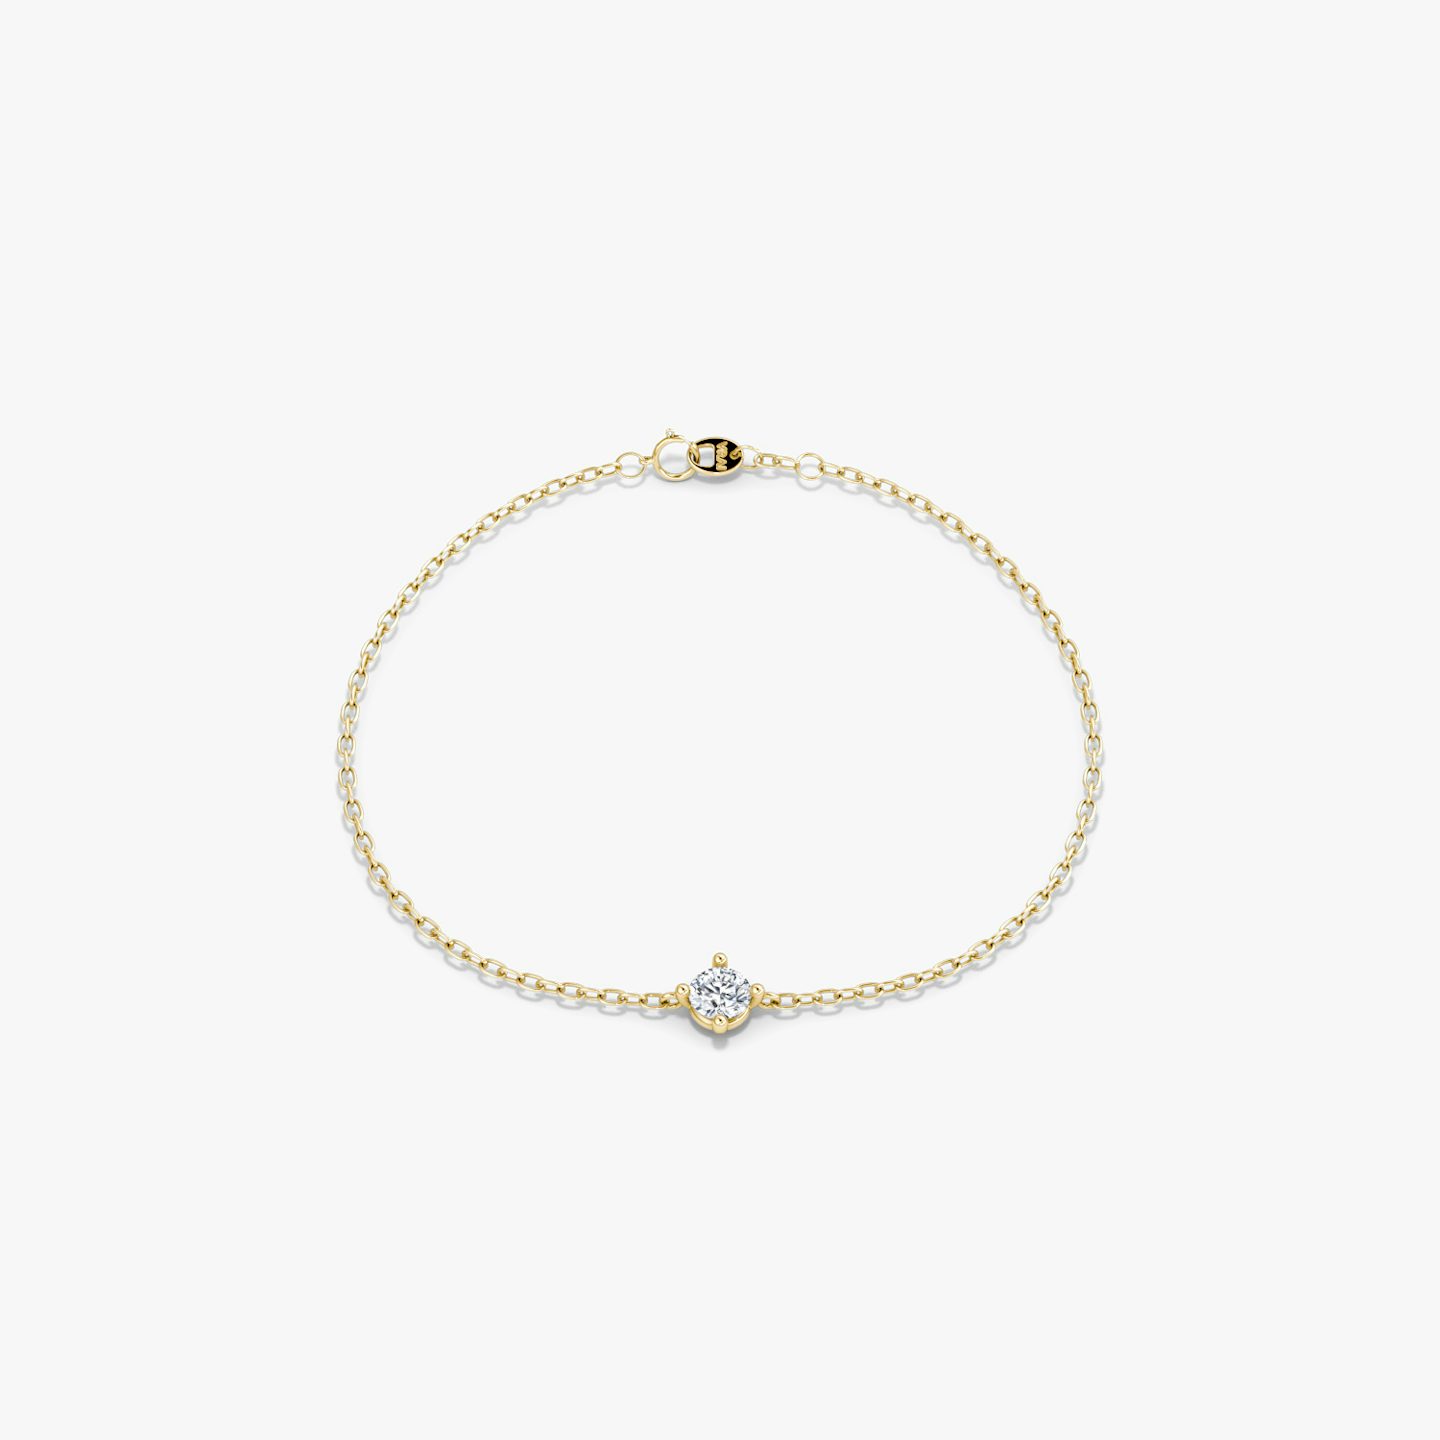 Bracelet Petite Solitaire | Rond Brillant | 14k | Or jaune 18 carats | Longueur de la chaîne: 6.5-7